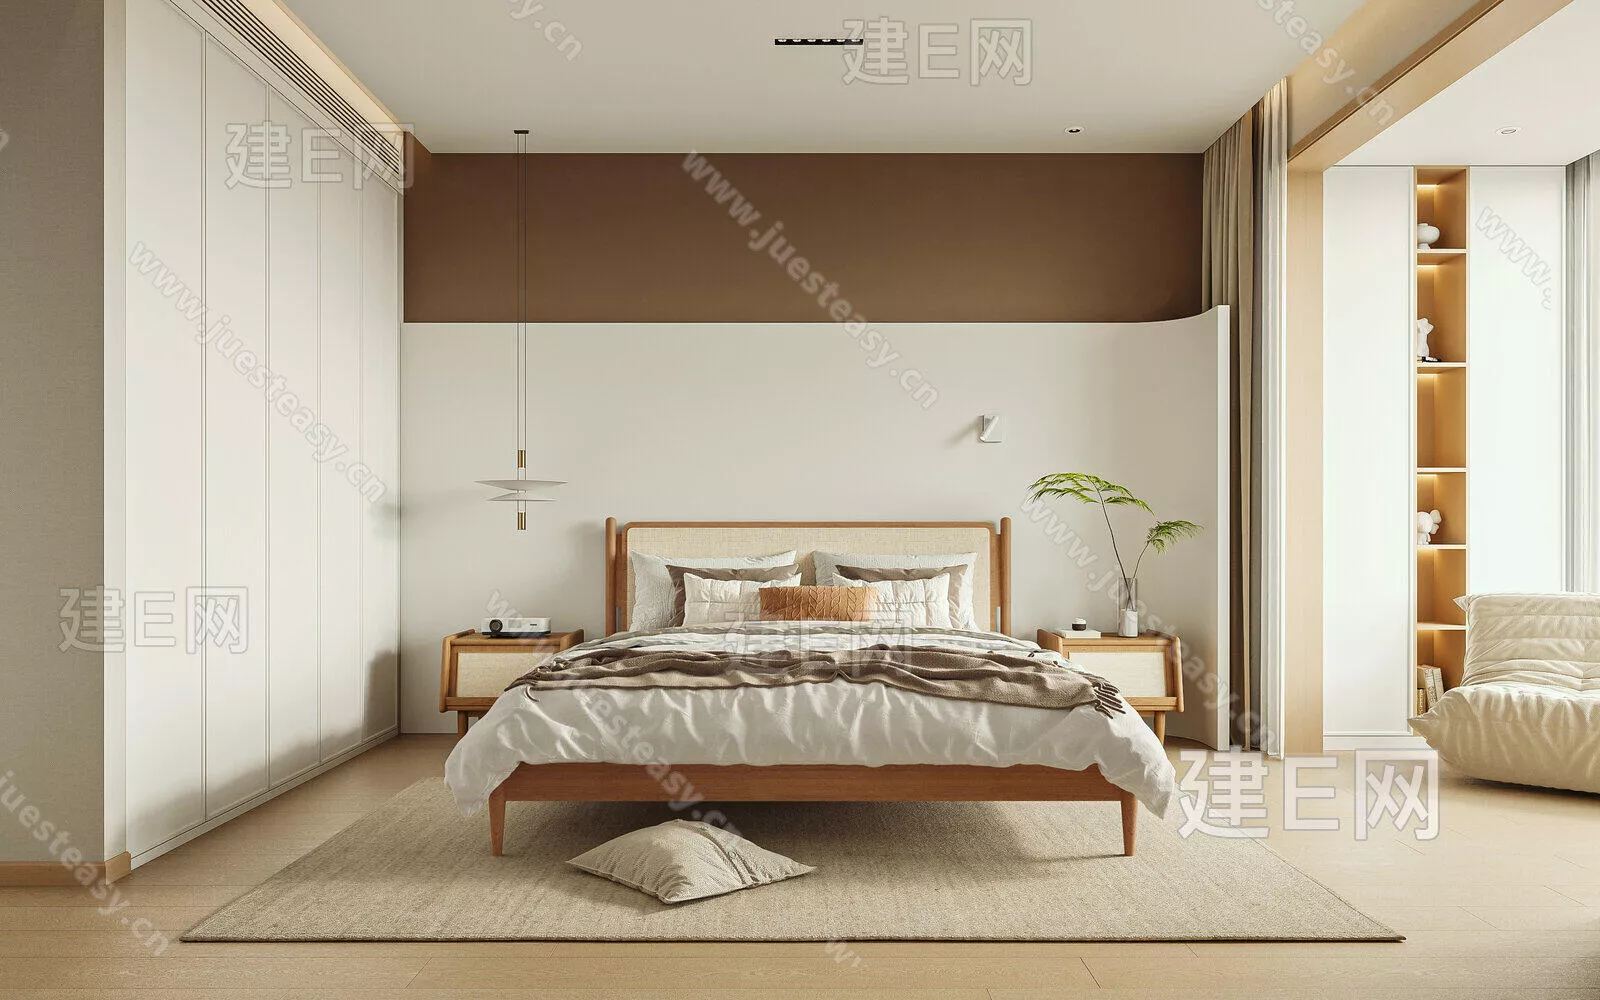 JAPANESE BEDROOM - SKETCHUP 3D SCENE - ENSCAPE - 113722906